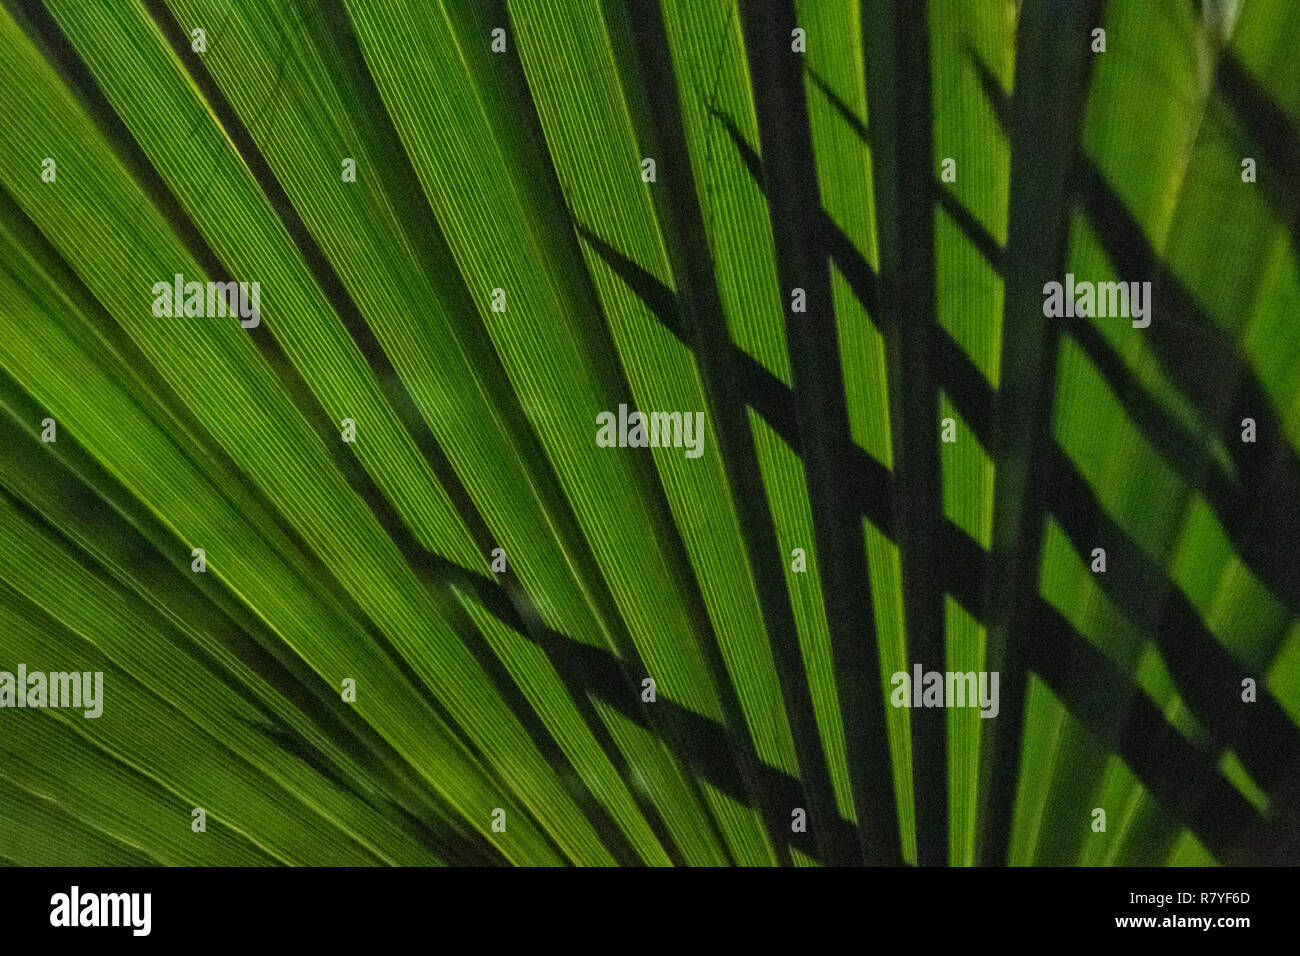 Ventilateur Palm fermer jusqu'à l'ombre des cocotiers - plante indigène d'Aruba - feuille de palmier vert foncé dans la nuit avec des feuilles pointues qui se profile derrière palm Banque D'Images